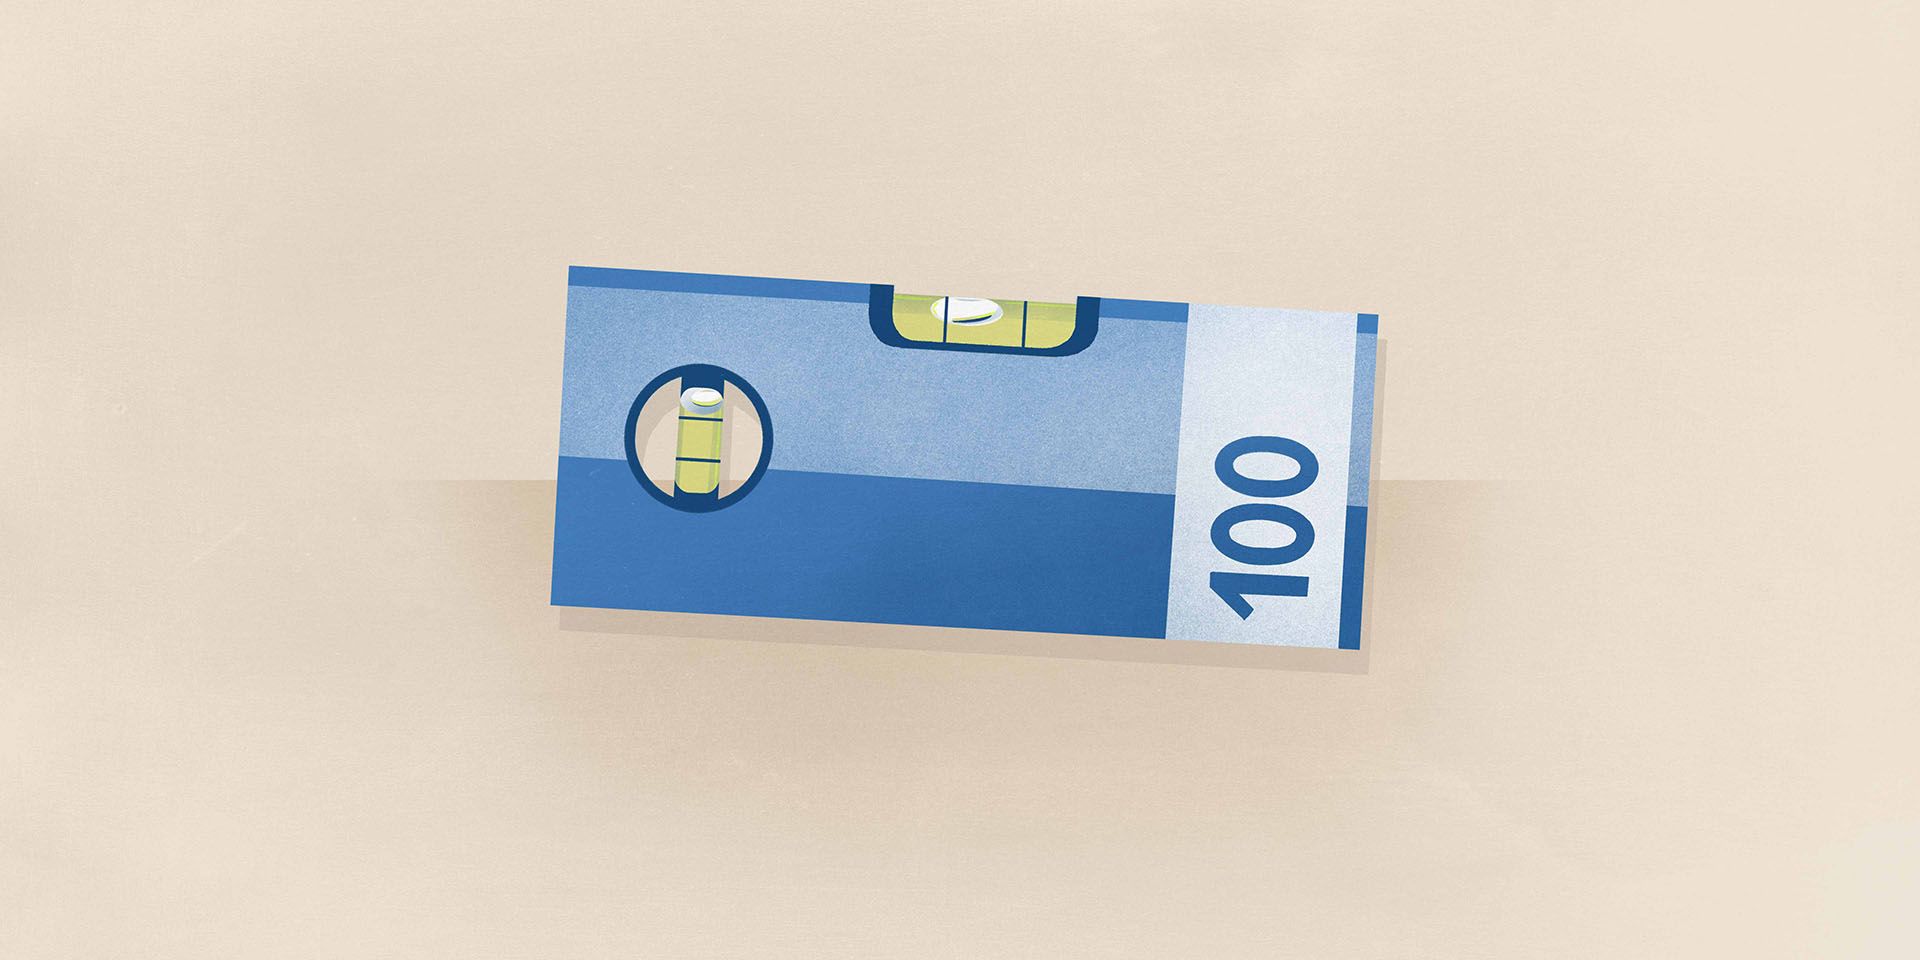 Una livella leggermente obliqua che ha l’aspetto di una banconota da cento franchi rappresenta la disparità salariale tra donne e uomini.